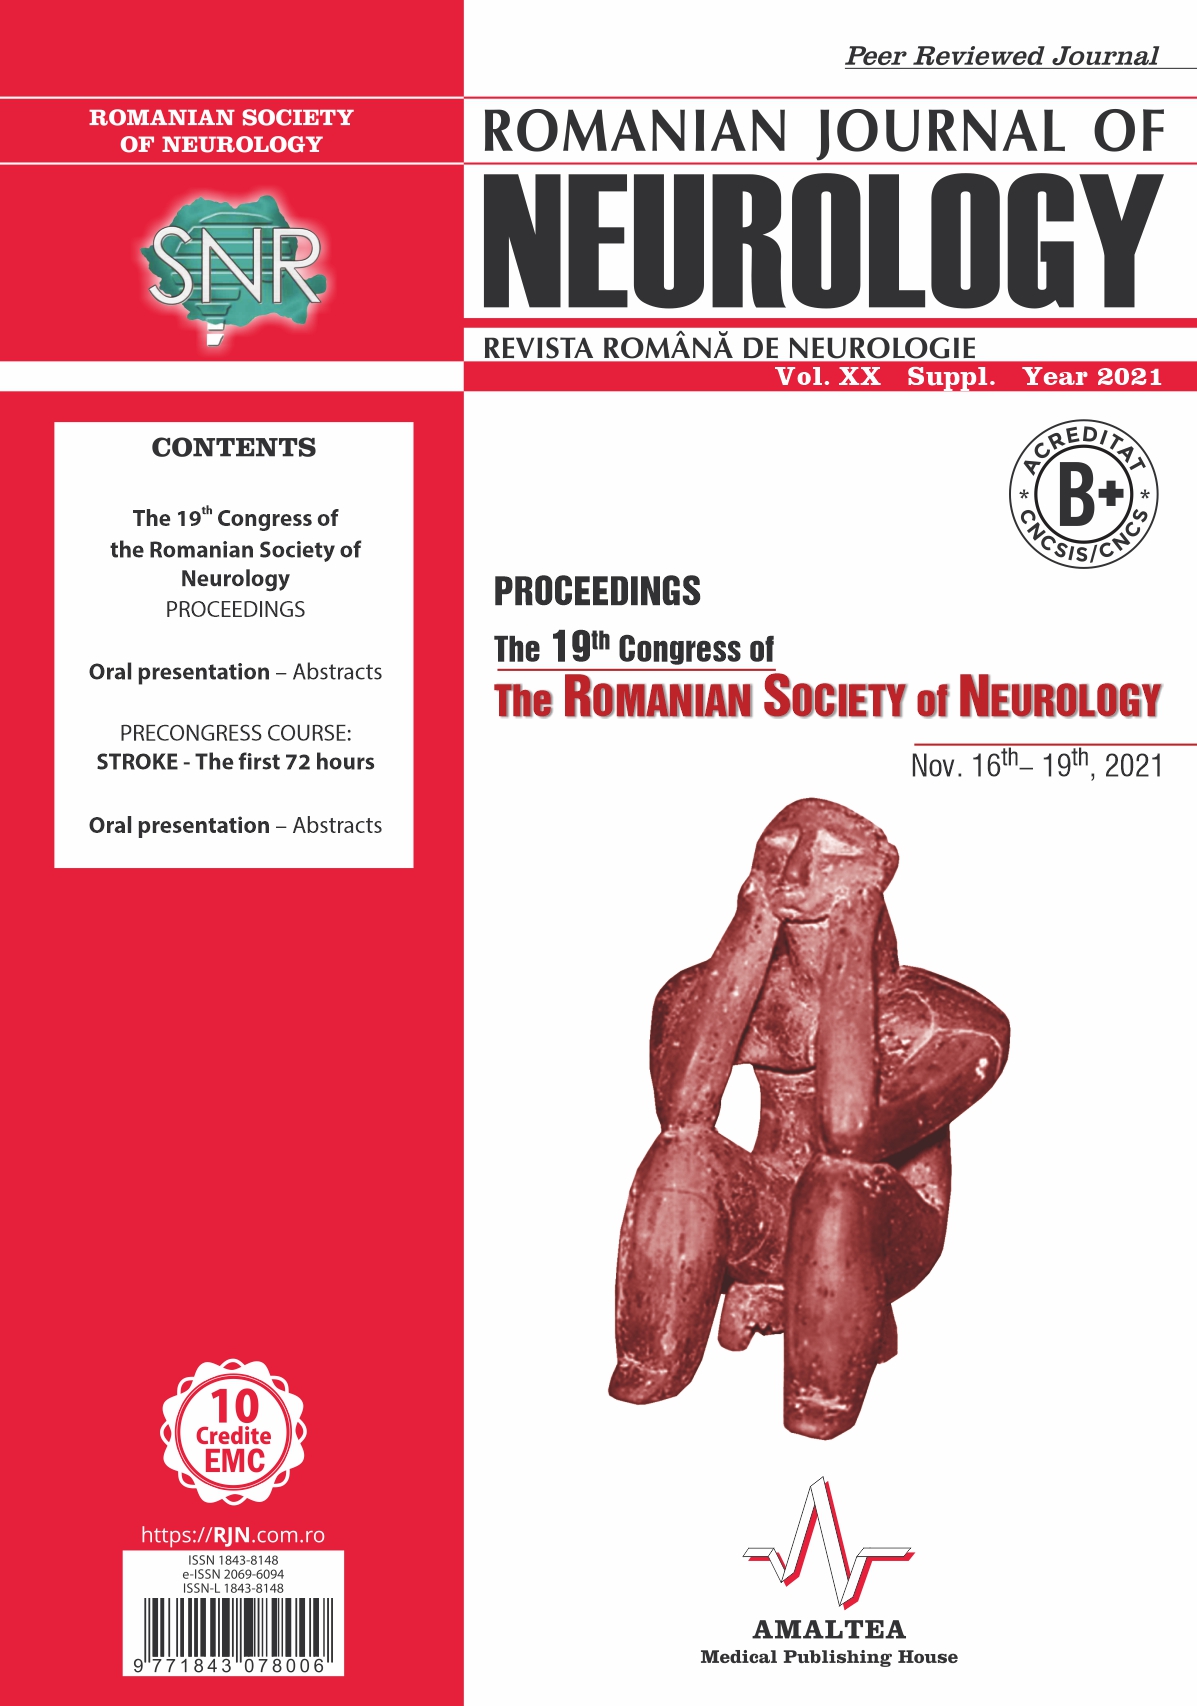 Romanian Journal of Neurology, Volume XX, Suppl., 2021